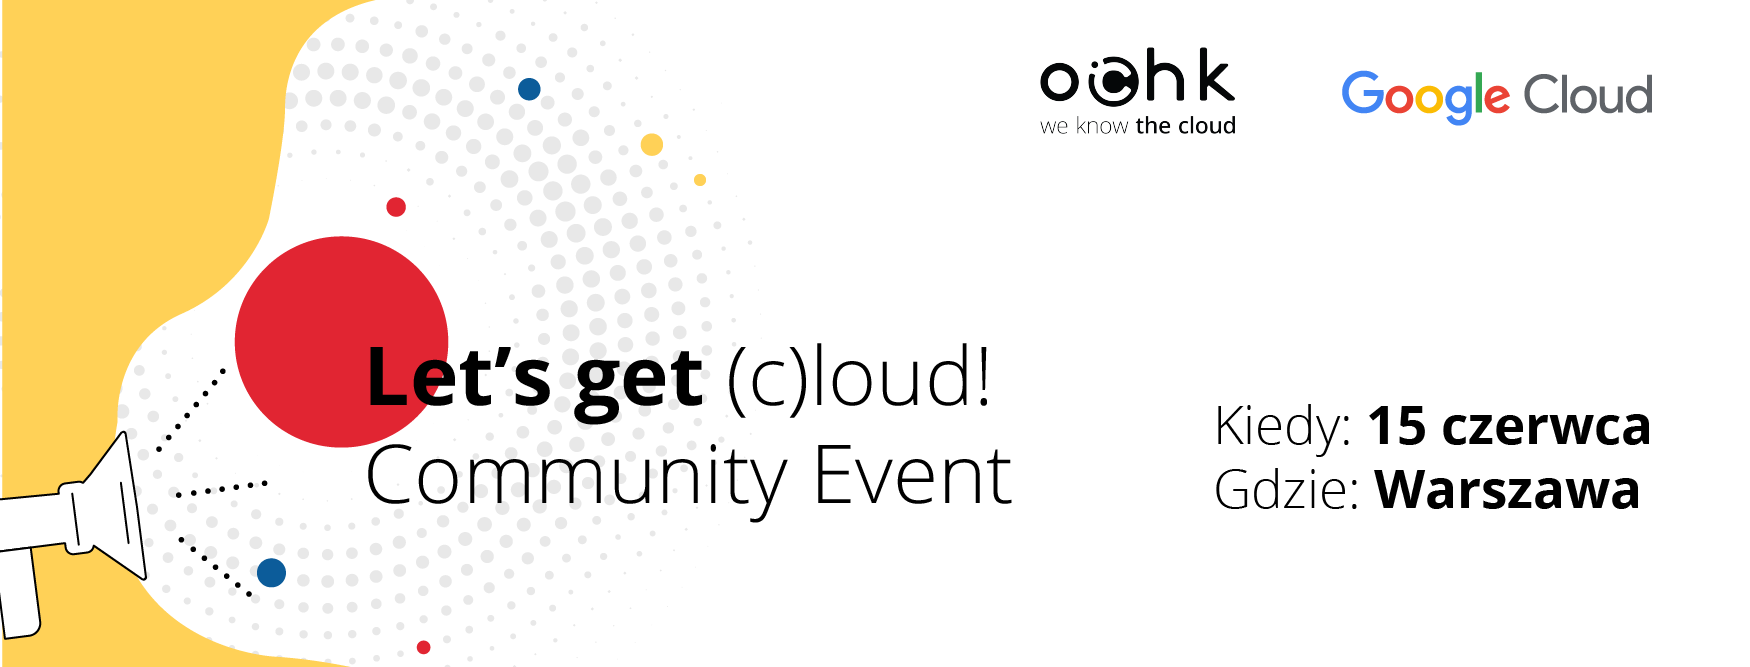 lets-get-cloud-community-event